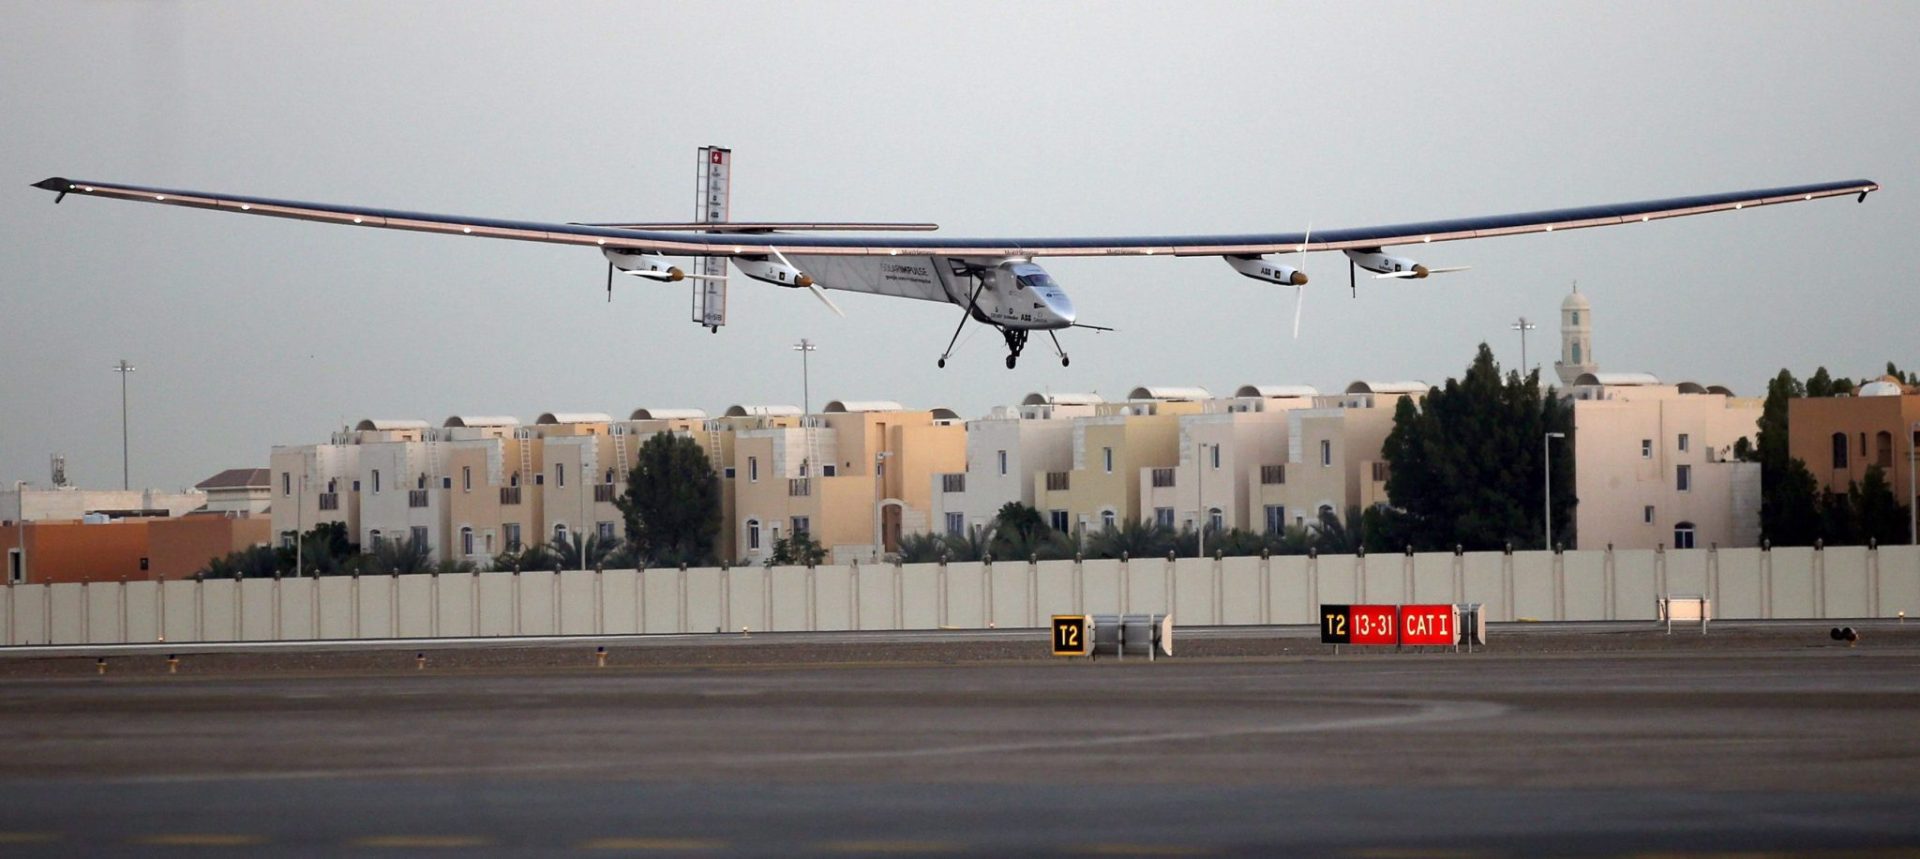 El avión solar, pilotado por el suizo Bertrand Piccard, se prepara antes de despegar en el campo de aviación de Moffett, en Mountain View (California)